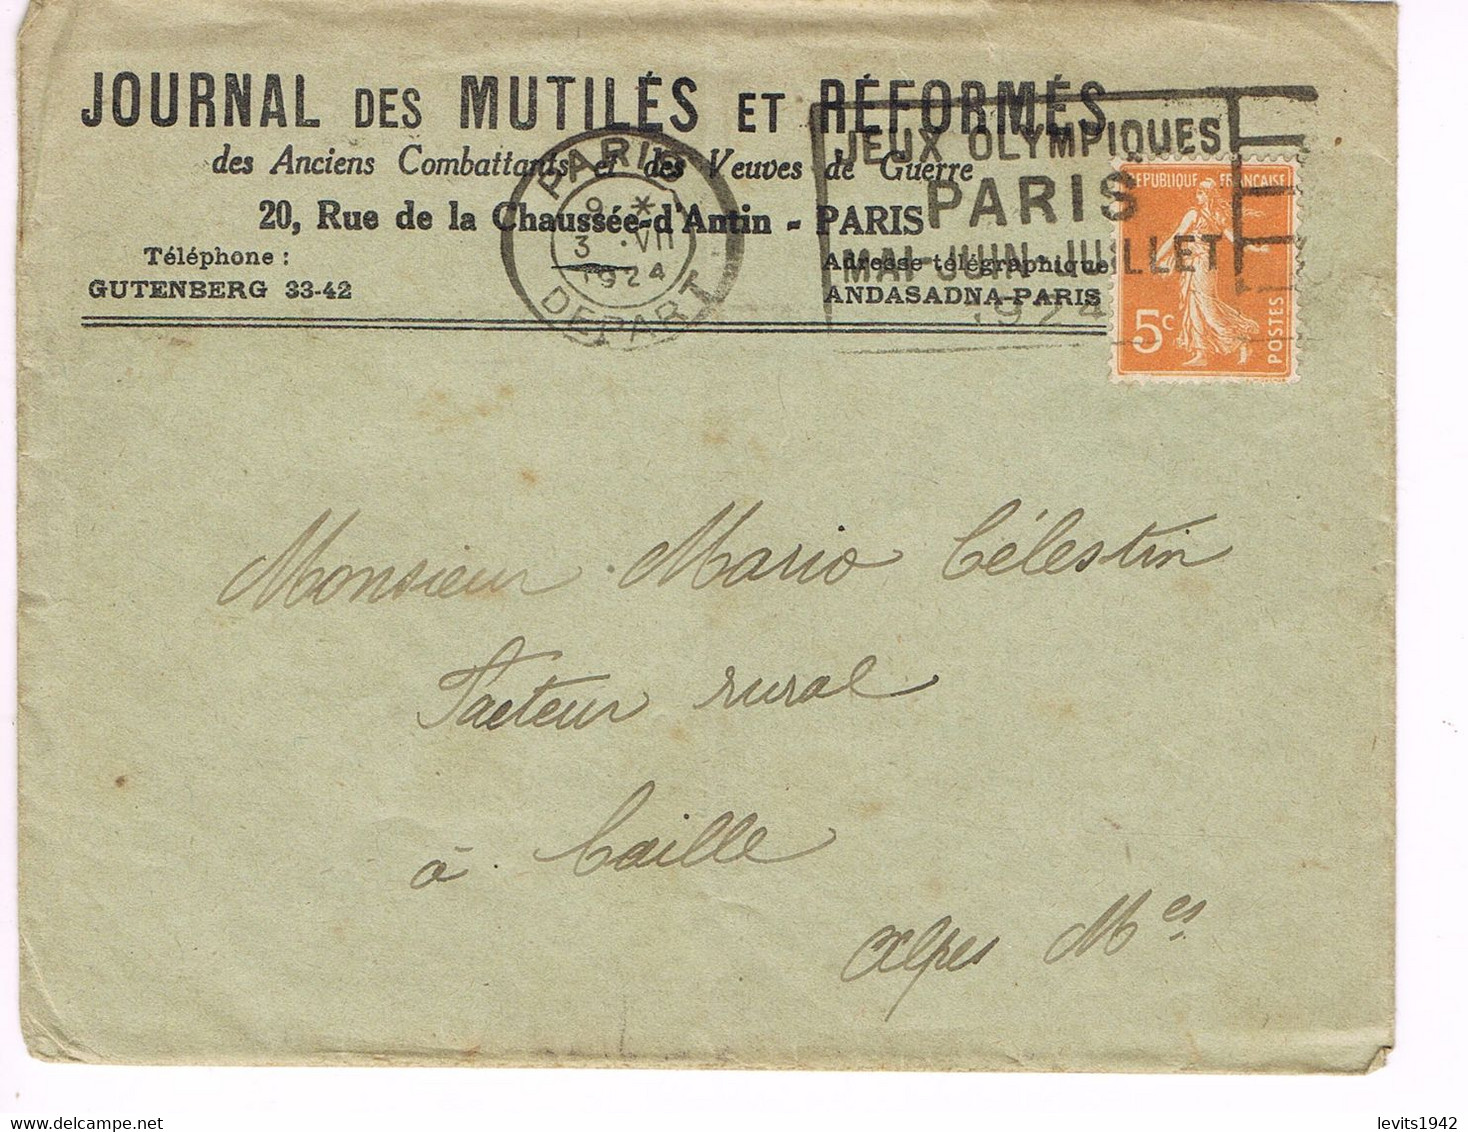 JEUX OLYMPIQUES 1924 -  MARQUE POSTALE - ESCRIME - TIR DE CHASSE - POLO - JOUR DE COMPETITION - 03-07 - - Estate 1924: Paris